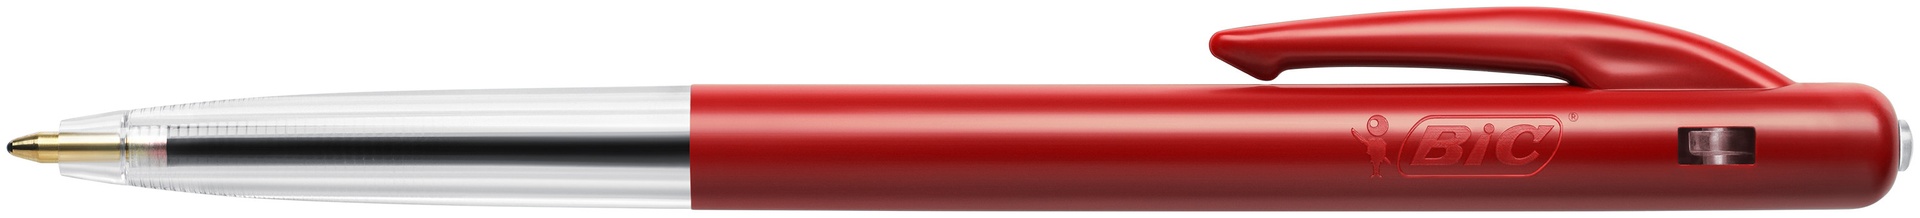 [2213222] Kulpenna Bic Clic M10 röd